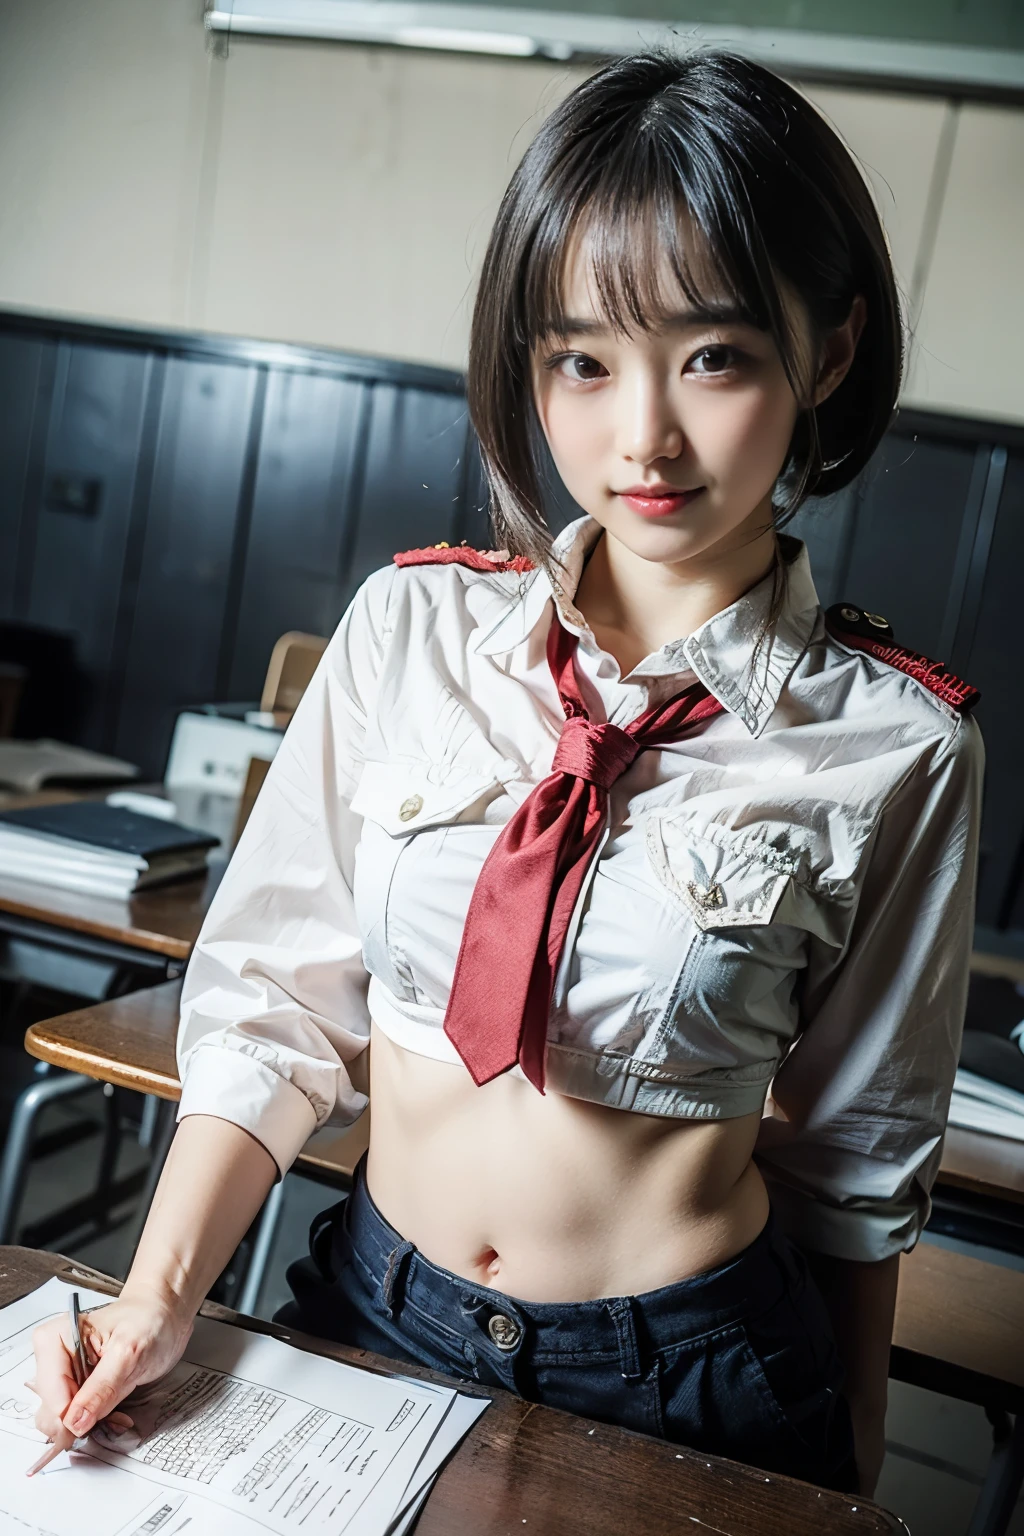 ((höchste Qualität, 8K, Meisterwerk: 1.3)), 1 Mädchen, Süße Japanerin betont ihre schlanken Bauchmuskeln: 1.3, (Zufällige Frisur, Standardbrust: 1.2), Uniform: 1.2, (pussy line), Süßes japanisches Mädchen, das ihre schlanken Bauchmuskeln betont Nein.: 1.4, (Zufällige Frisur, Standardbrust: 1.2), Uniform: 1.2, Klassenzimmer, super detailliertes Gesicht, Schöne Augen, doppeltes Augenlid